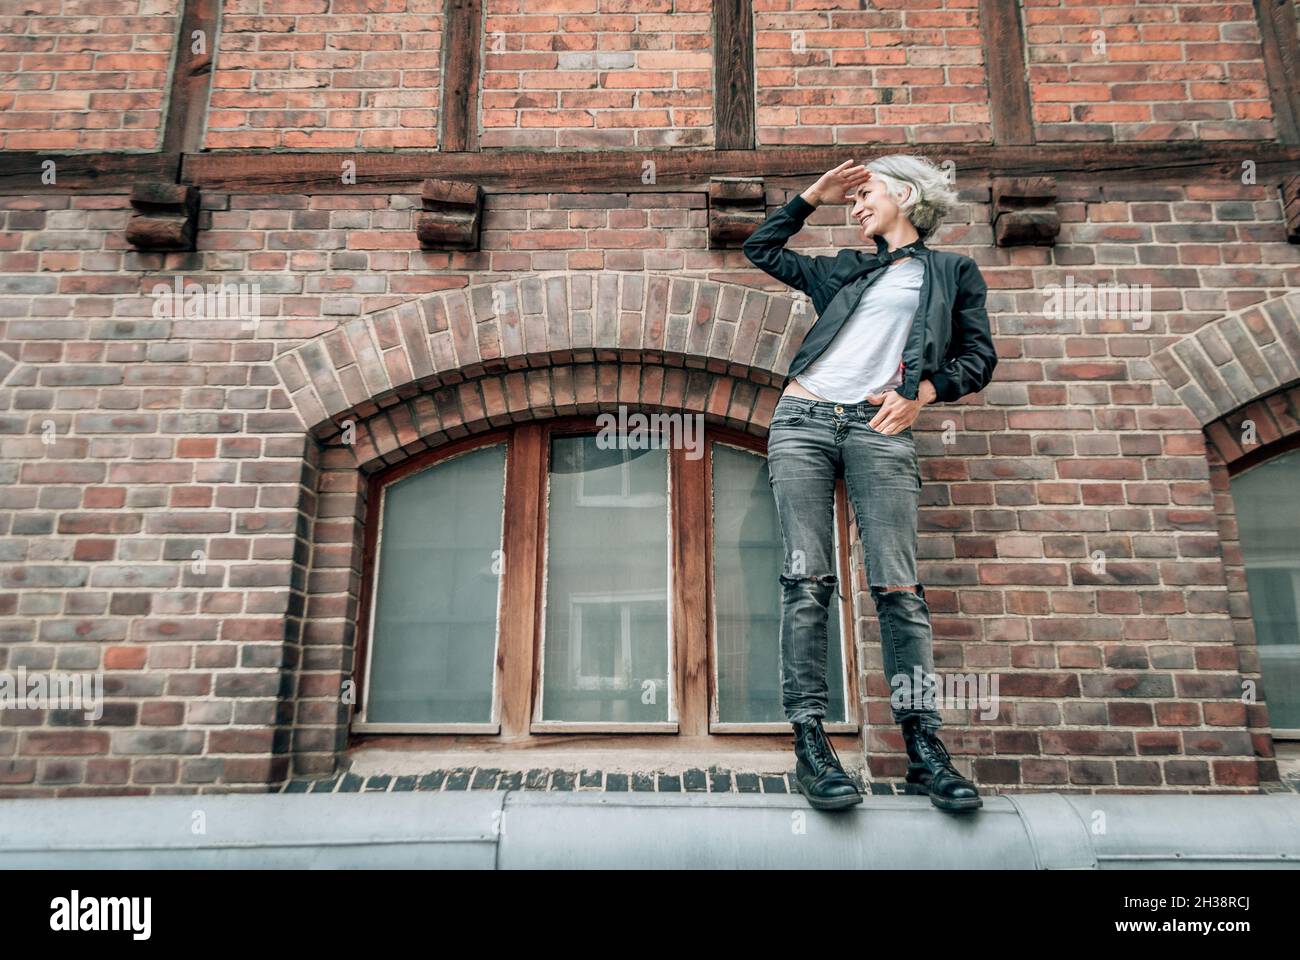 Frau steht auf einem Rohr in der Nähe des alten Gebäudes, lächelt und schaut weg Stockfoto